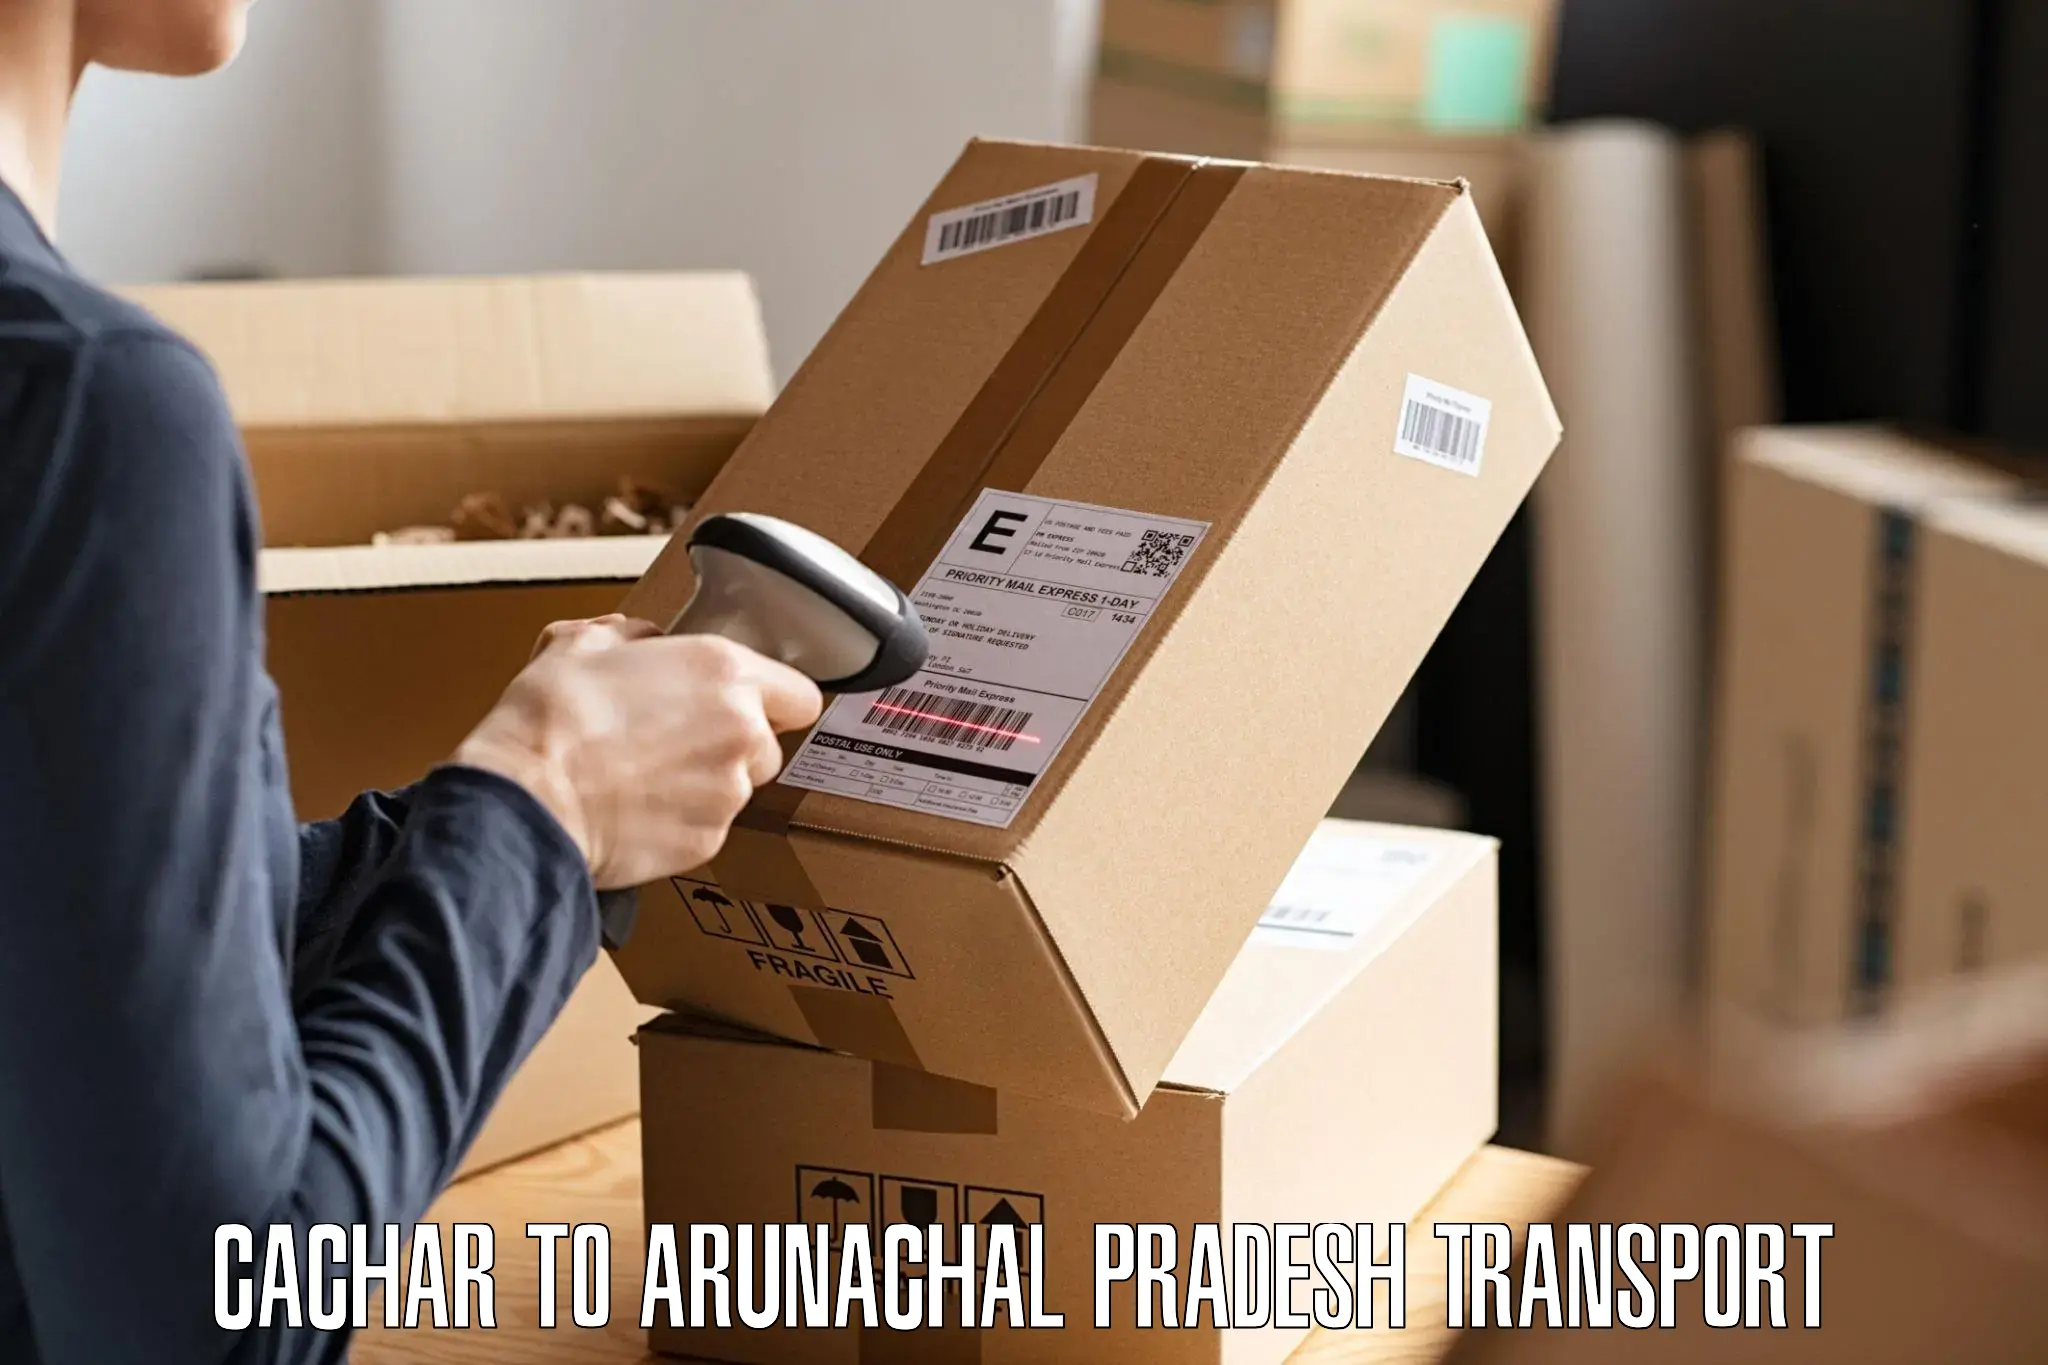 Nearby transport service Cachar to Arunachal Pradesh